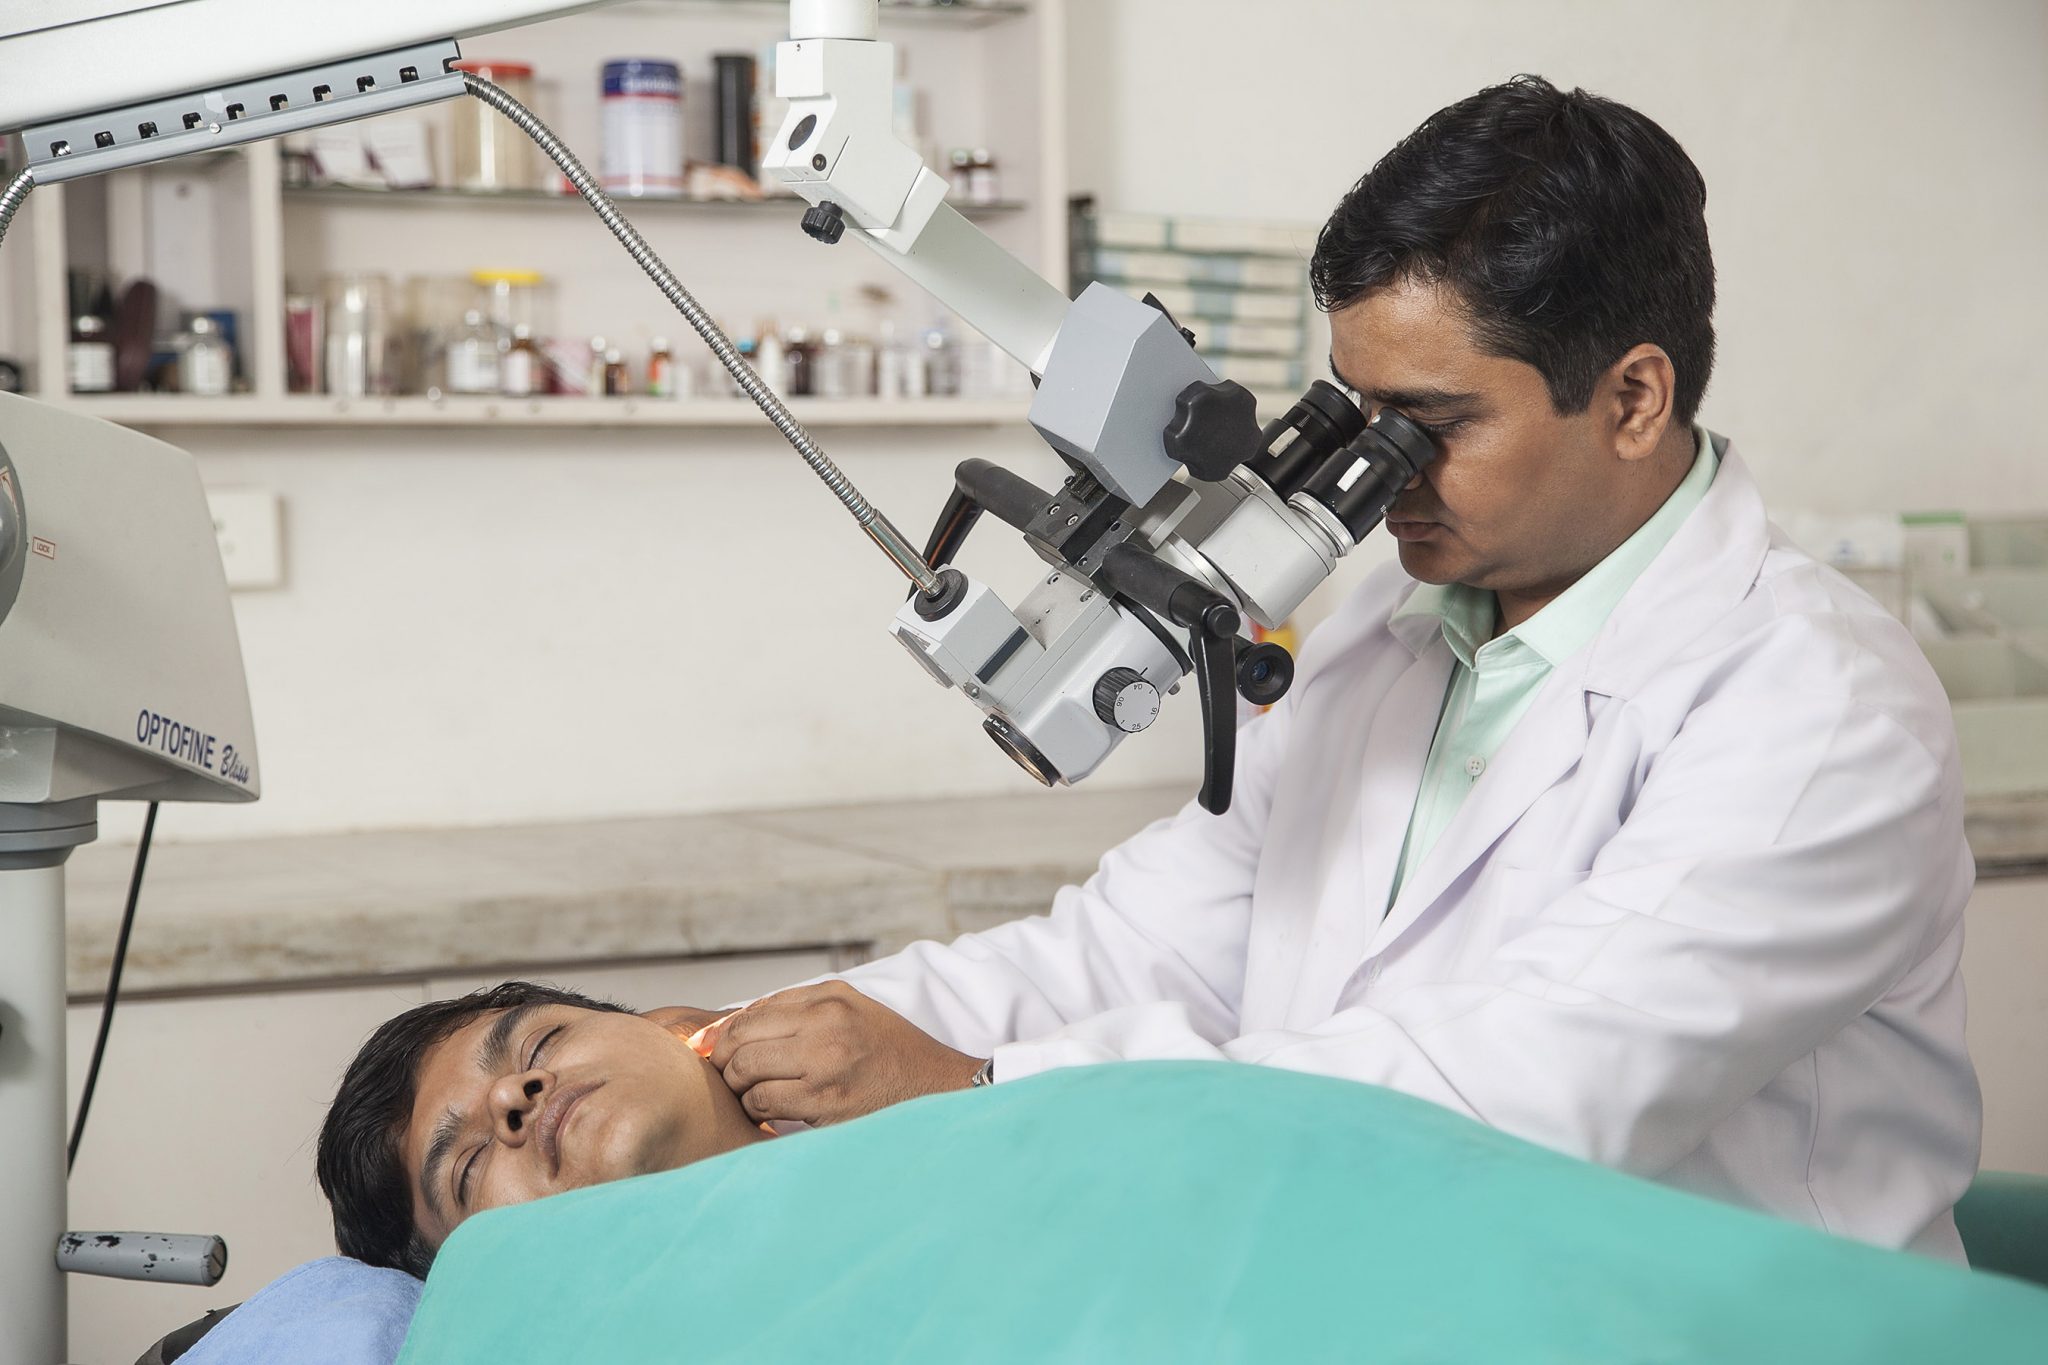 ENT Surgeon in Nashik - Dr. Mukesh More